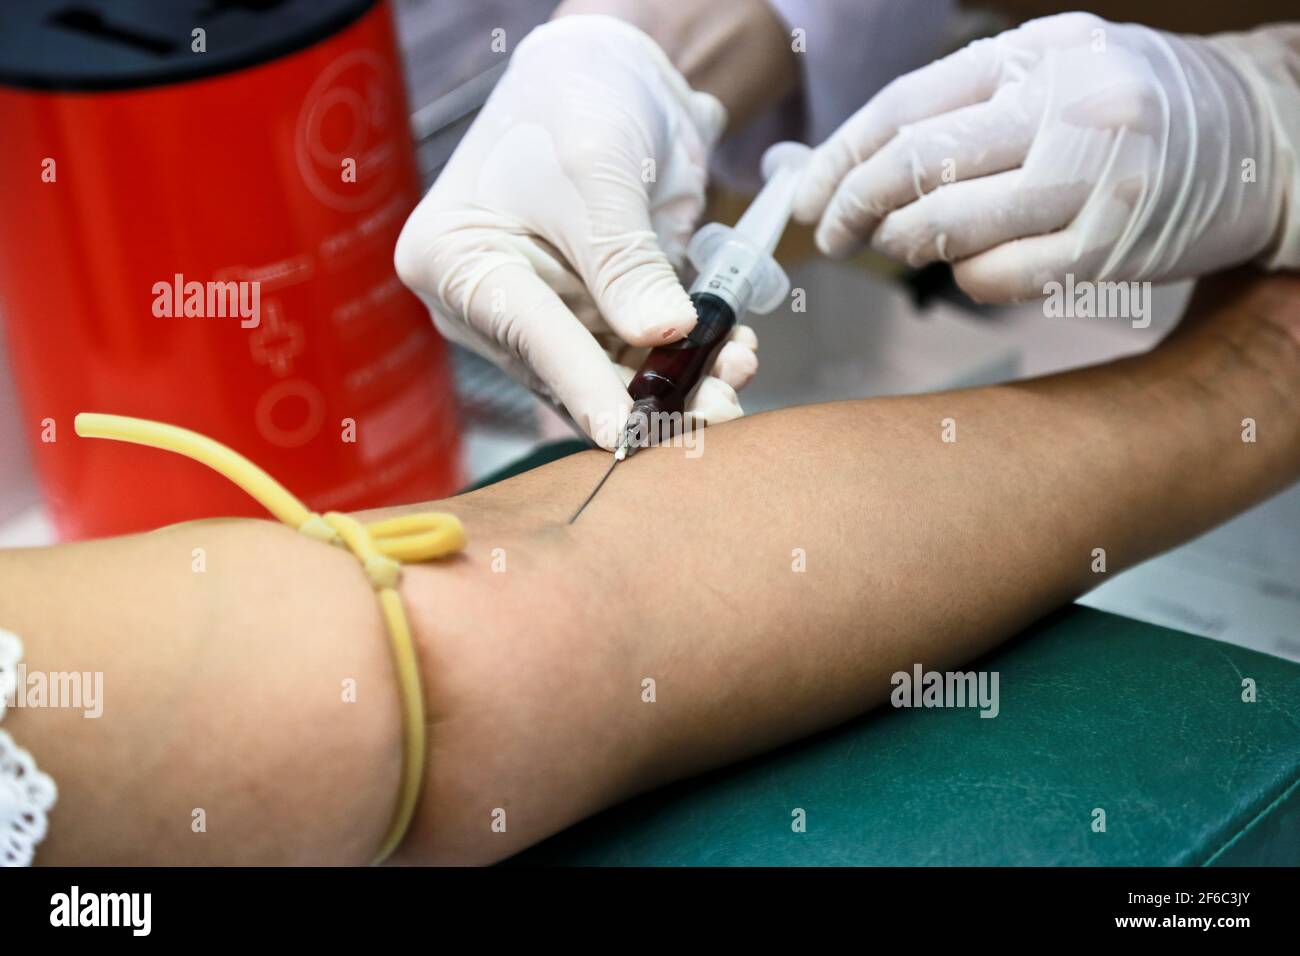 Le médecin ou l'infirmière porte des gants médicaux blancs en utilisant une seringue à aiguille pour prélever un échantillon de sang du bras du patient à l'hôpital. Banque D'Images